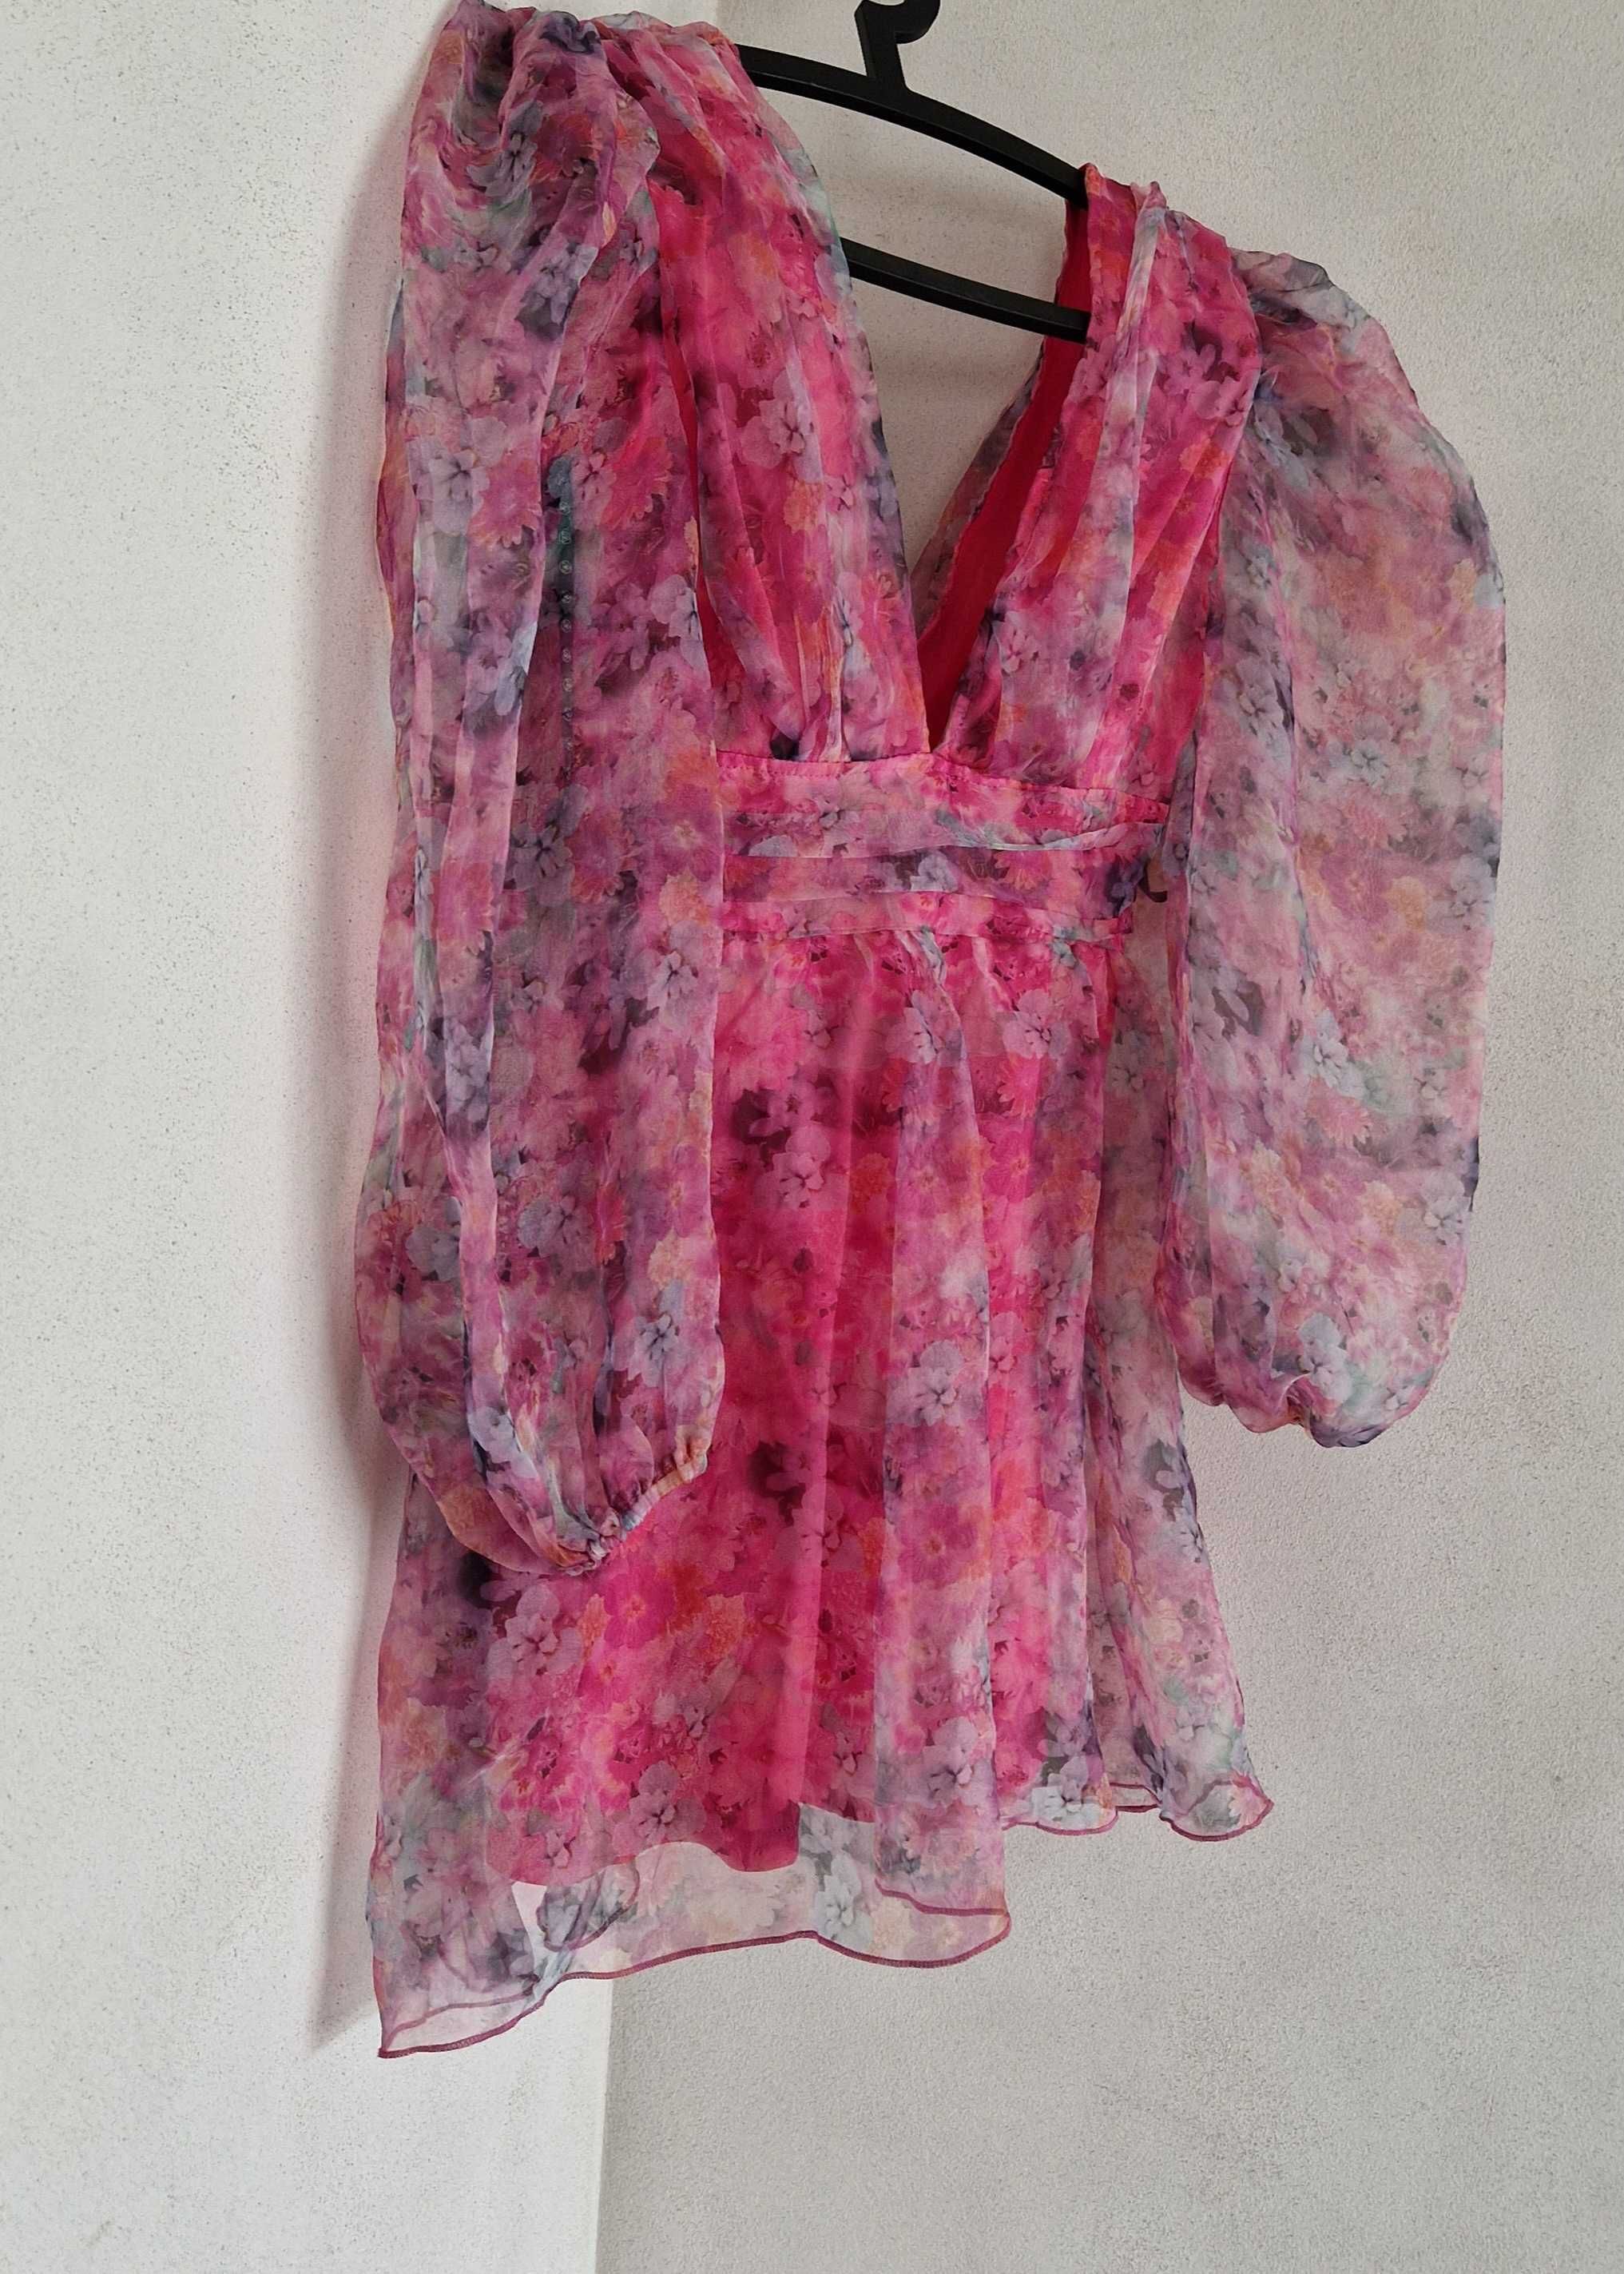 cudowna Sukienka szyfon kwiaty mgiełka dekolt v MISSGUIDED 34 XS new